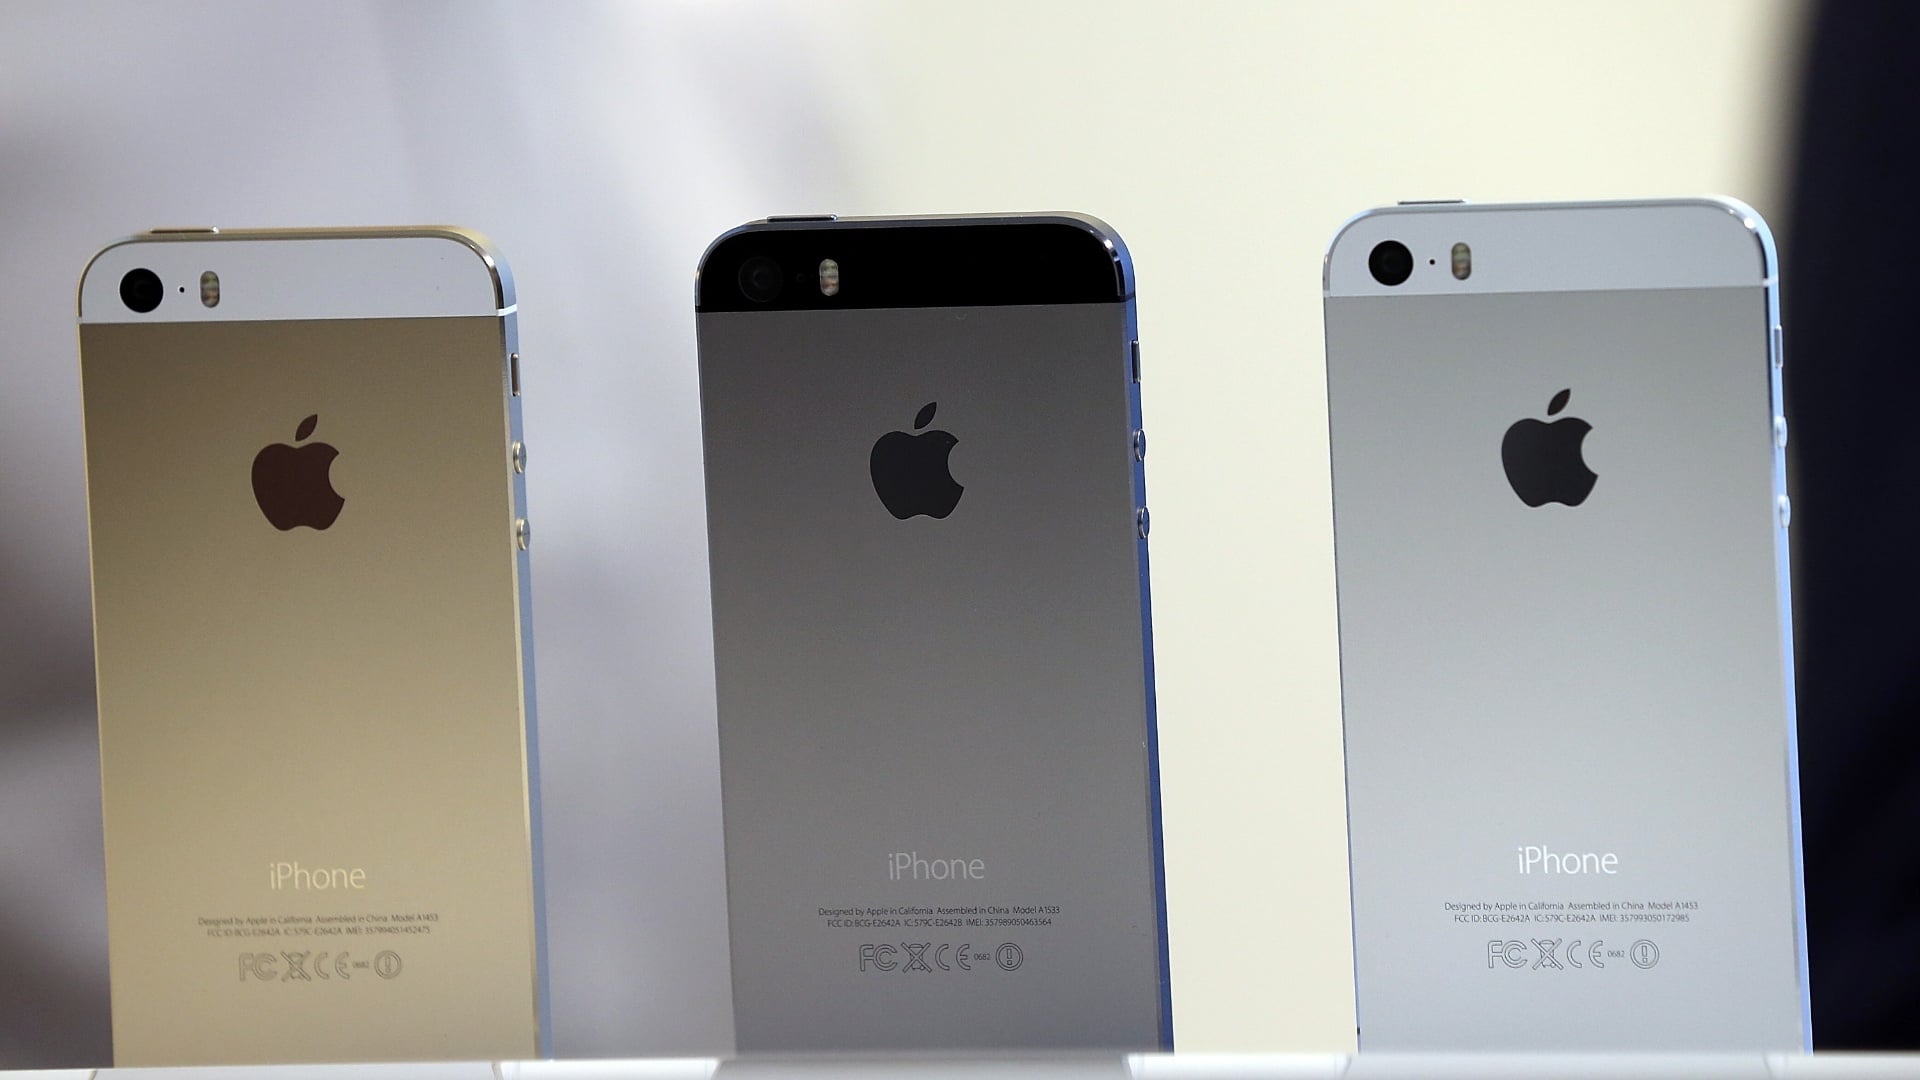 Das schwarz-grafitfarbene iPhone 5s sieht toll aus - ich verstehe nicht warum Apple davon gekündigt 47